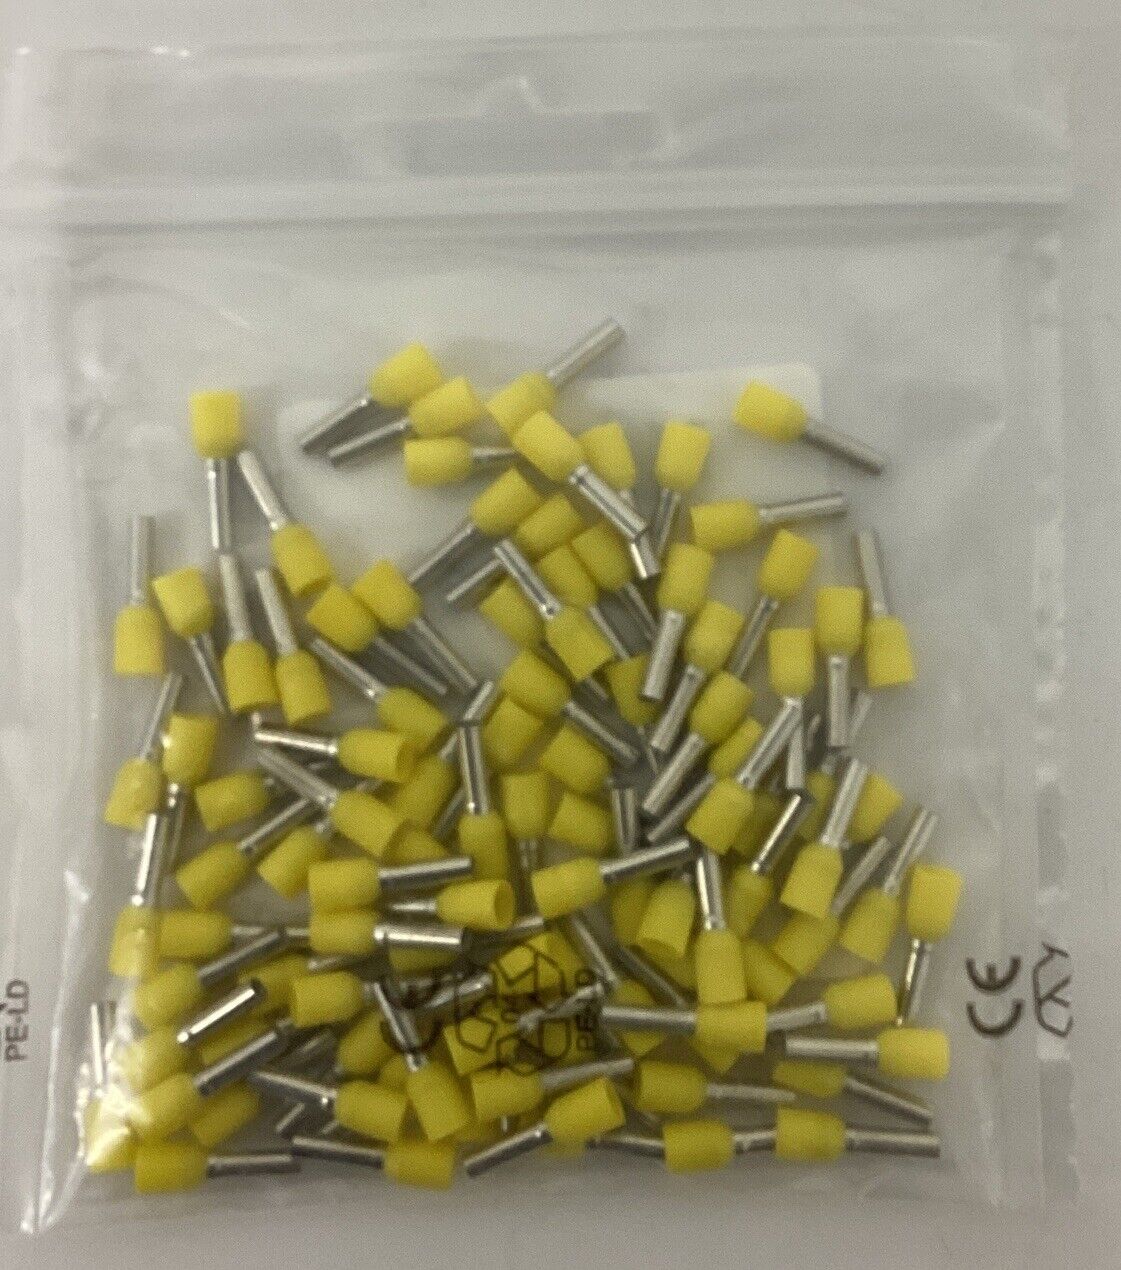 Wago 216-205 Pkg of 100 Ferrule 14 AWG Yellow (BL268) - 0